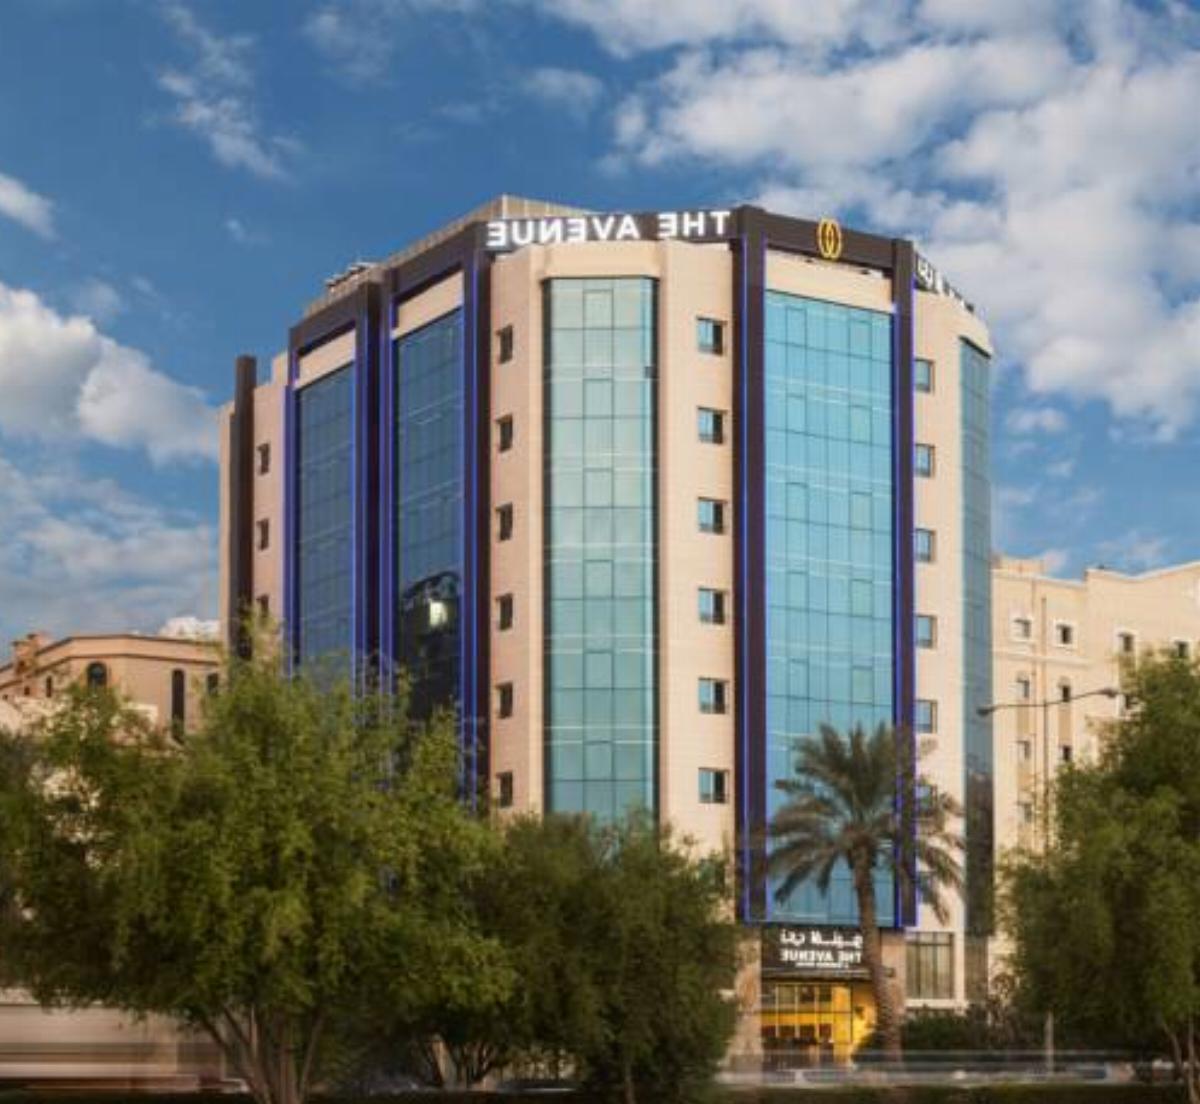 The Avenue, a Murwab Hotel Hotel Doha Qatar